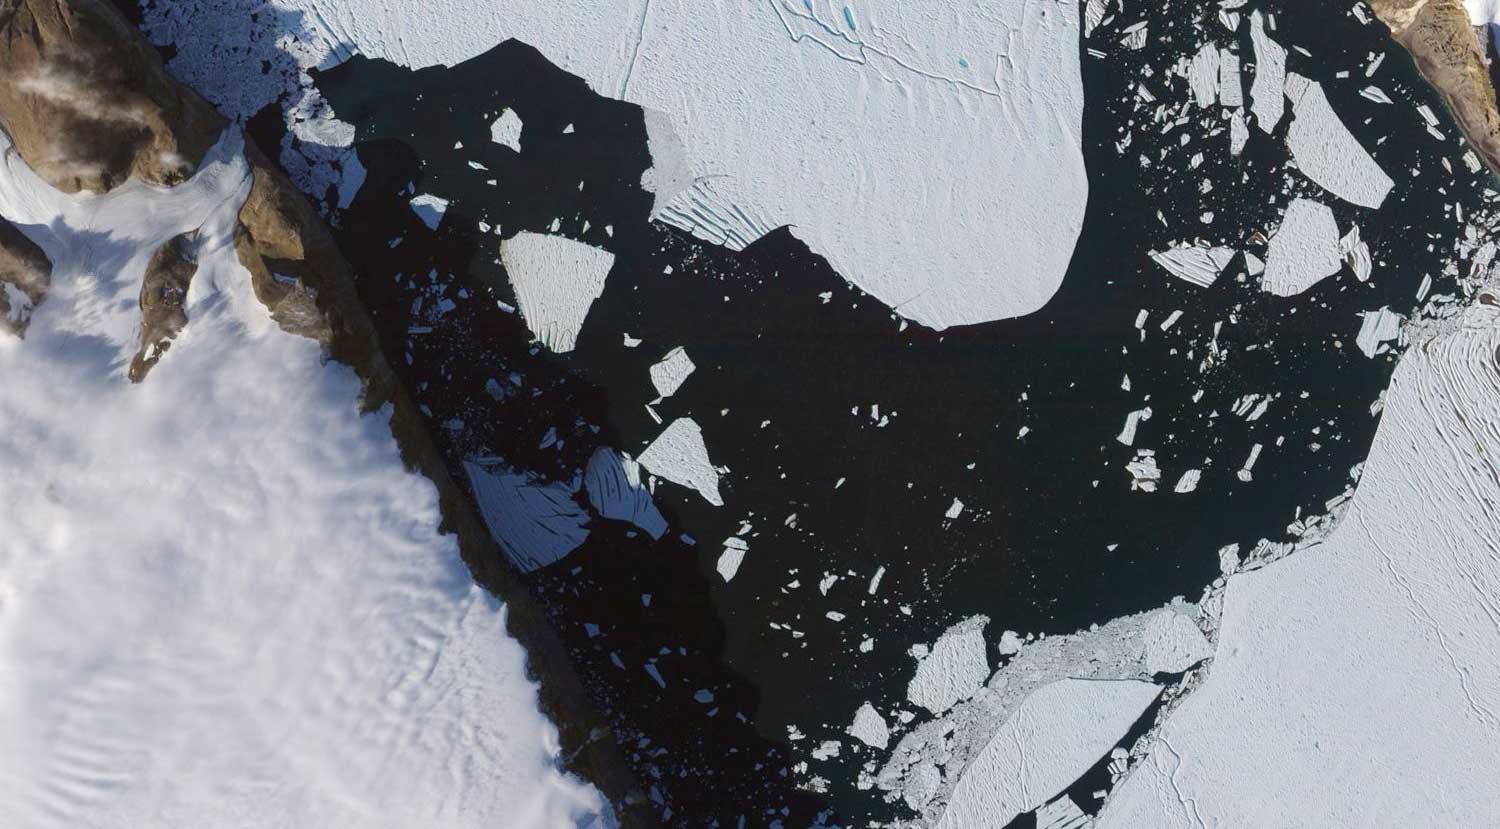 Imensa geleira na Groenlândia derrete e revela aumento mais rápido do nível do mar | Mundo & História